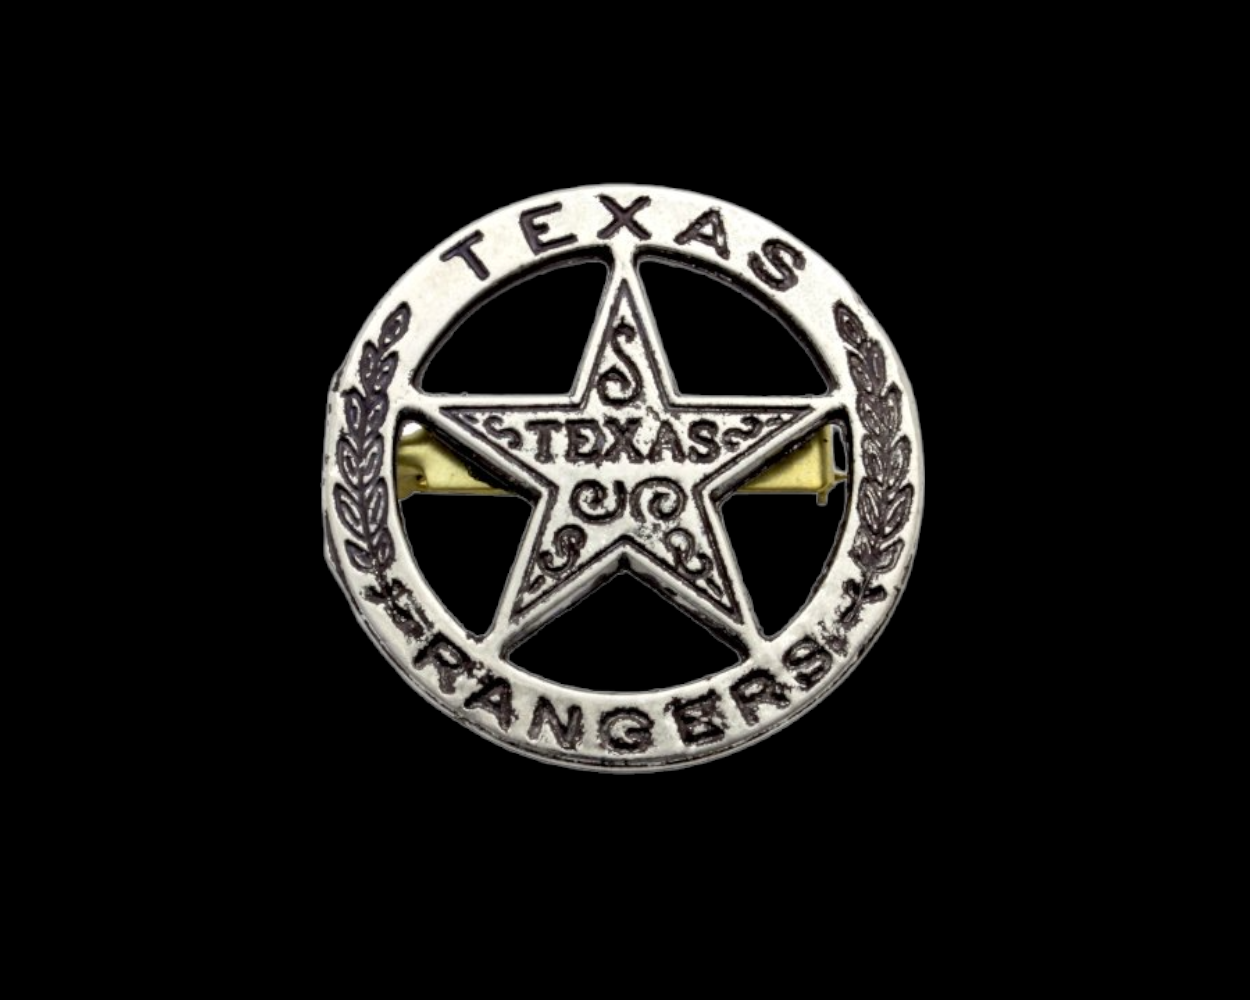 Texas ranger badge of silver (102) - Global Replicas